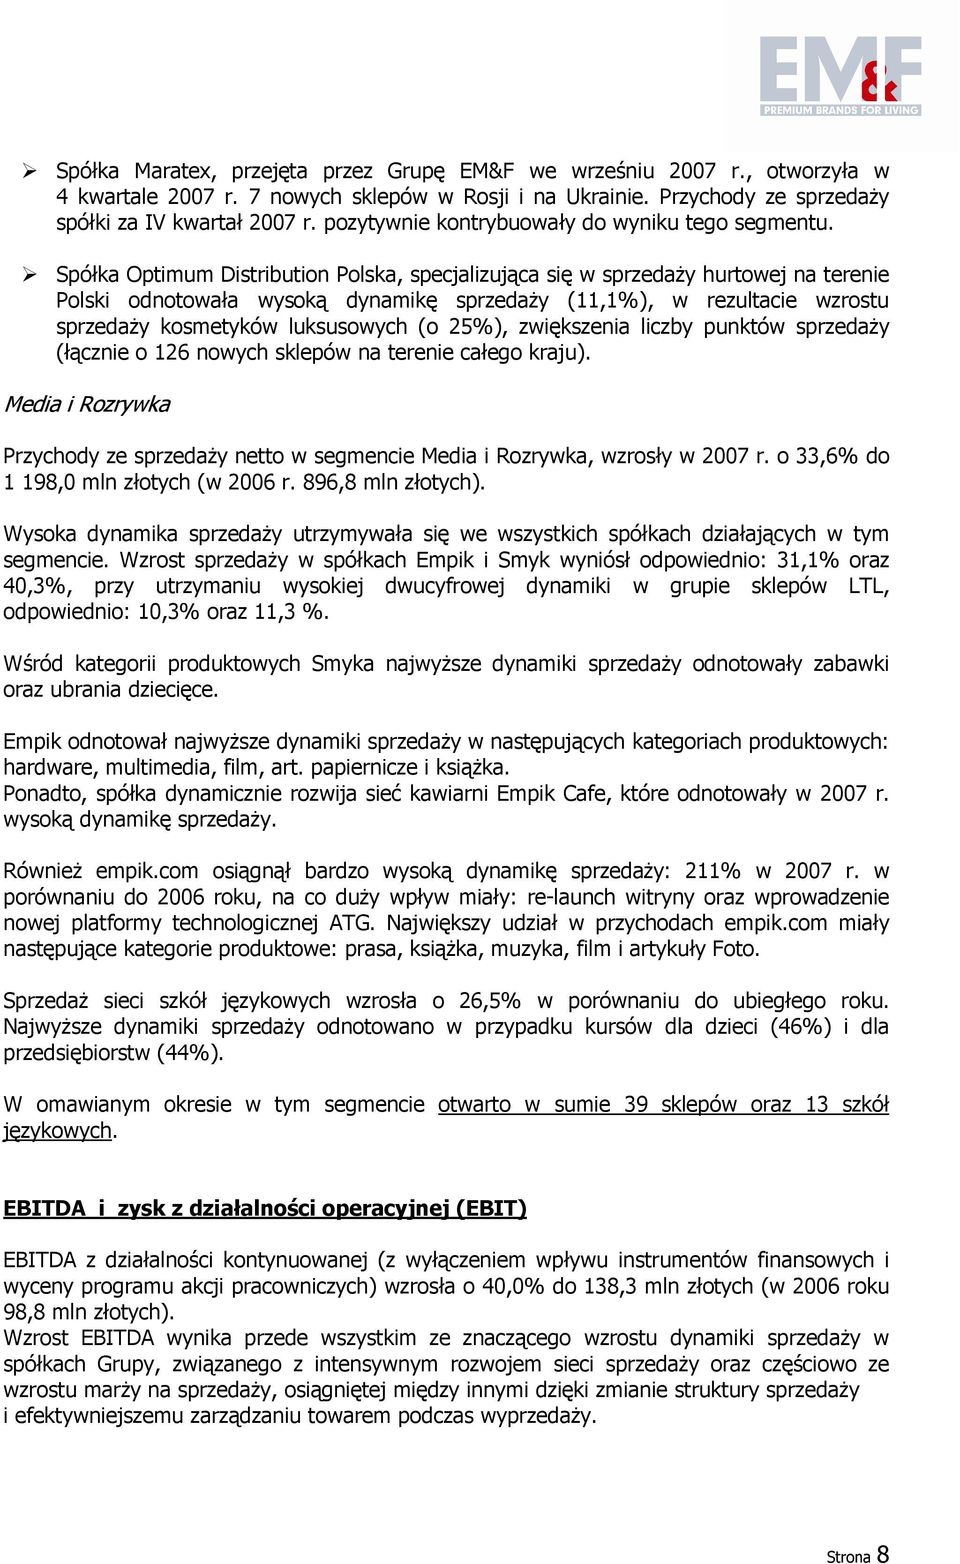 Spółka Optimum Distribution Polska, specjalizująca się w sprzedaŝy hurtowej na terenie Polski odnotowała wysoką dynamikę sprzedaŝy (11,1%), w rezultacie wzrostu sprzedaŝy kosmetyków luksusowych (o